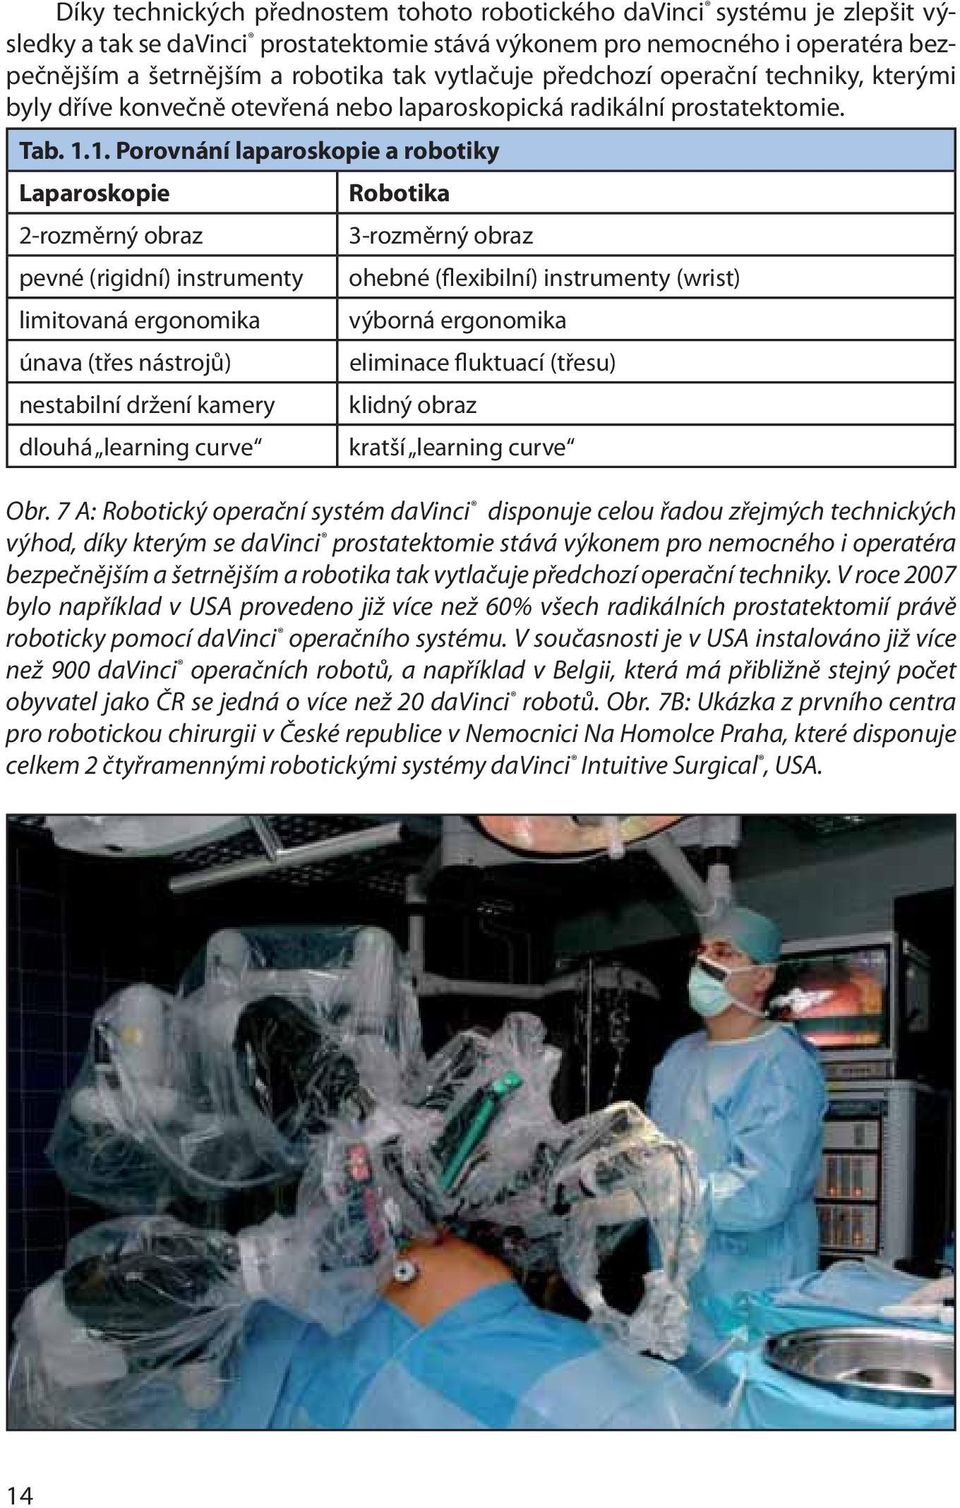 1. Porovnání laparoskopie a robotiky Laparoskopie Robotika 2-rozměrný obraz 3-rozměrný obraz pevné (rigidní) instrumenty ohebné (flexibilní) instrumenty (wrist) limitovaná ergonomika výborná